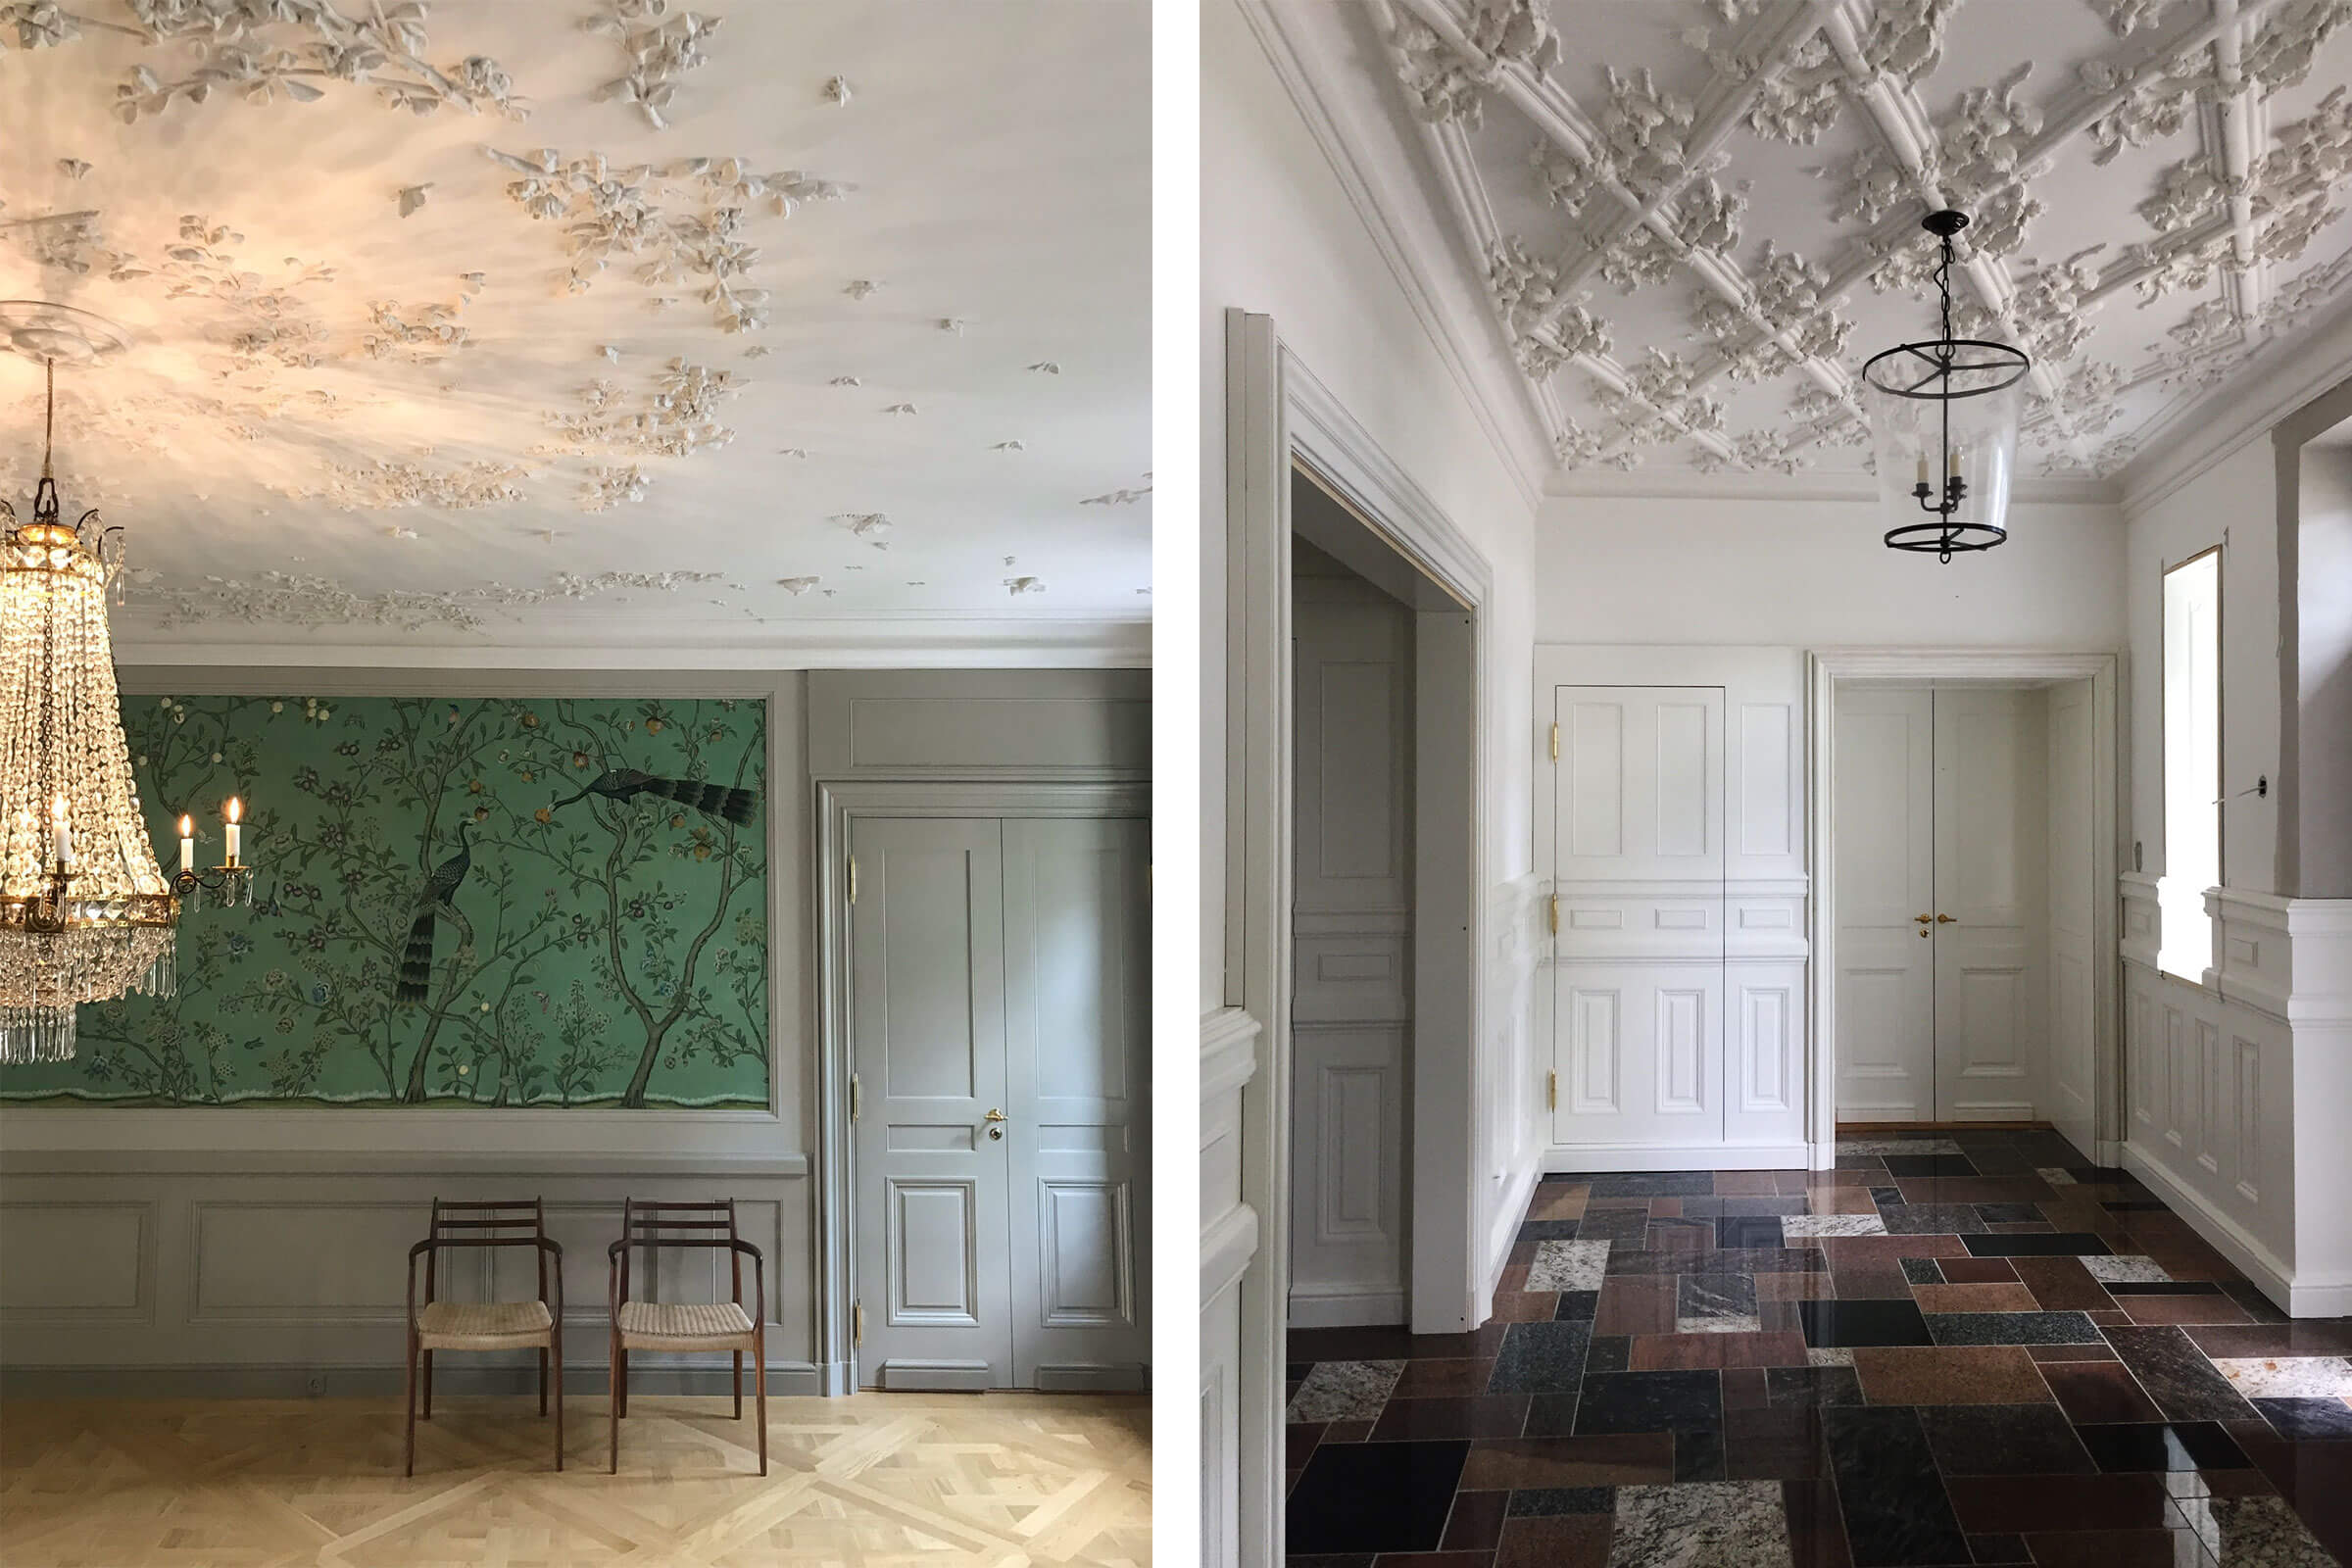 claus lind © interior stucco classic panels scandinavian nordic manor vestibule interior designer